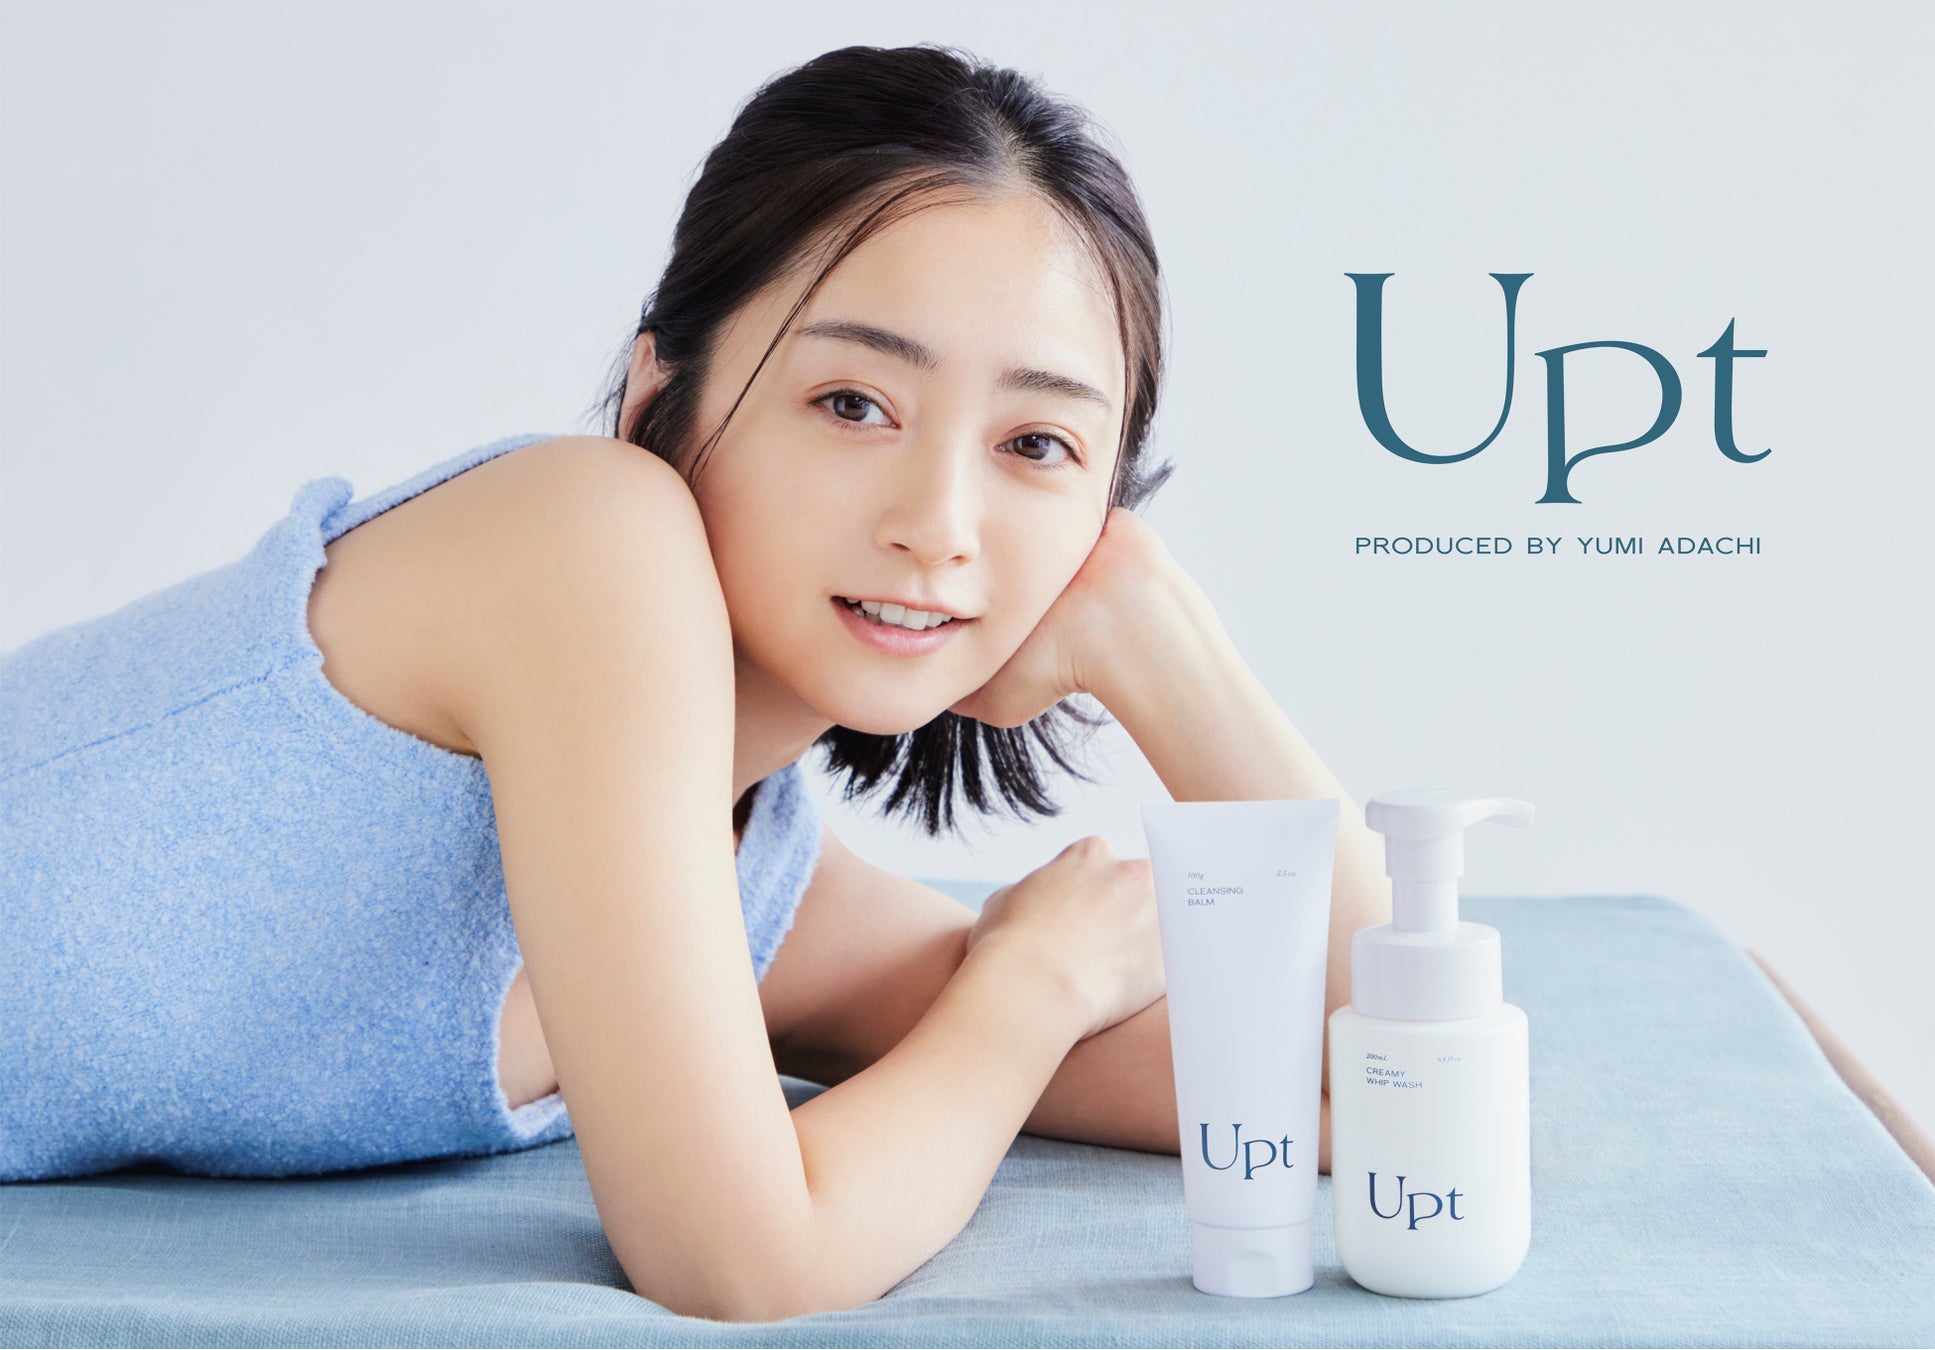 安達祐実プロデュースブランド「Upt（ウプト）」より待望の新商品が4月24日(月)登場！第二弾は「手軽な落とすケア」を叶える、クレンジングバームと泡洗顔料の2アイテムをラインナップ。